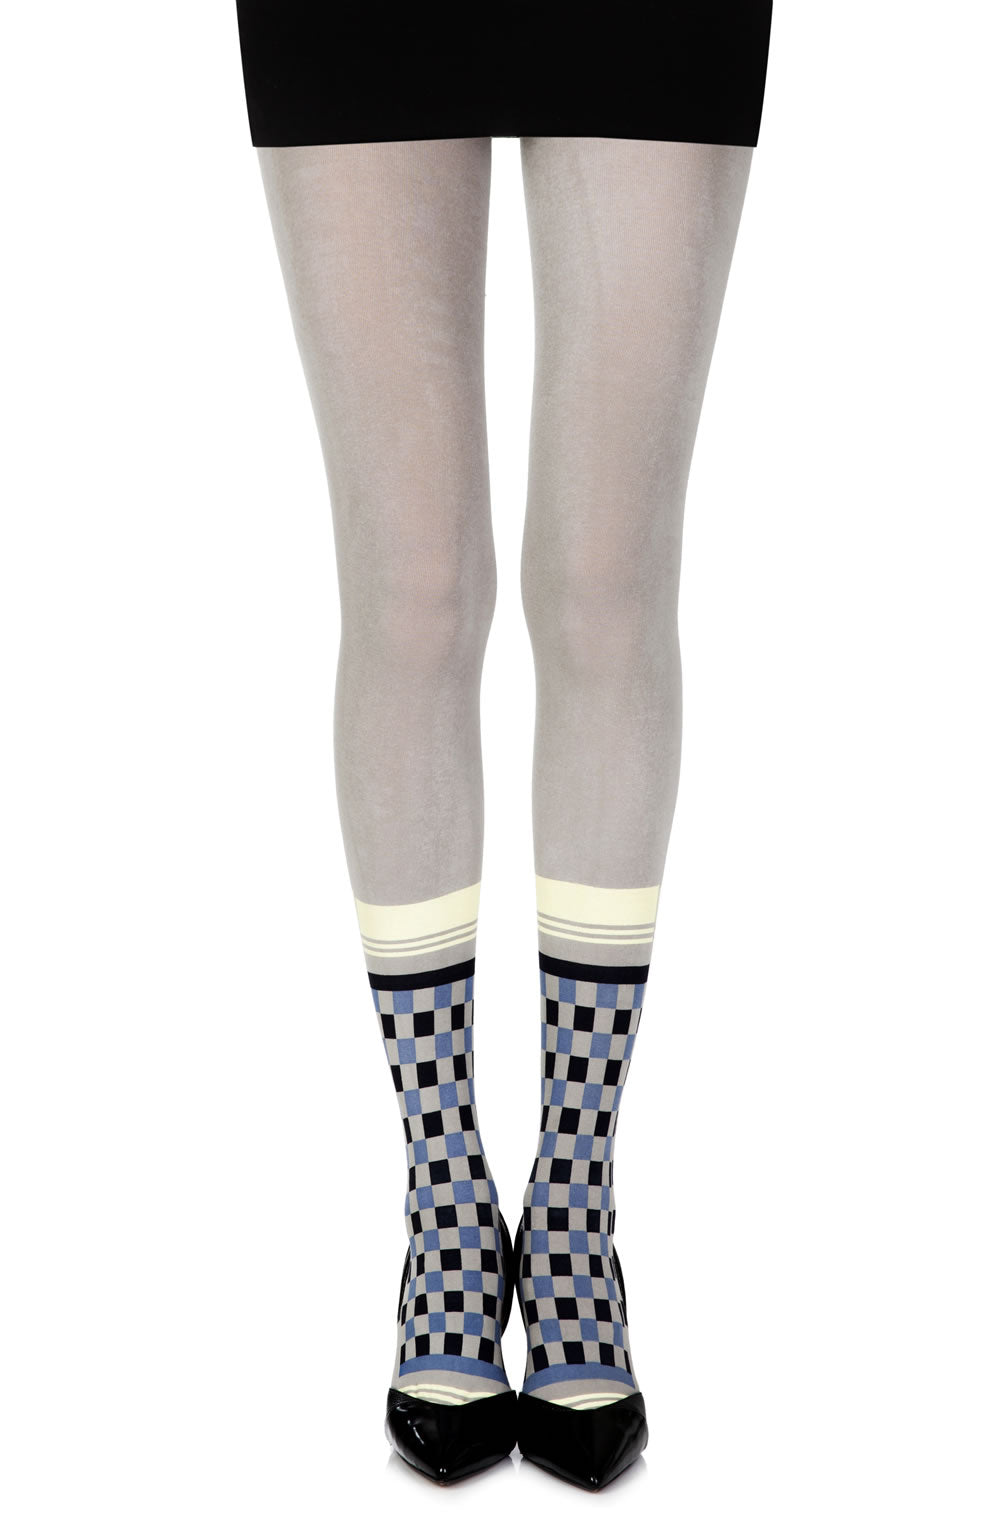 Zohara "Happy Socks" Grey/Multi Print Tights